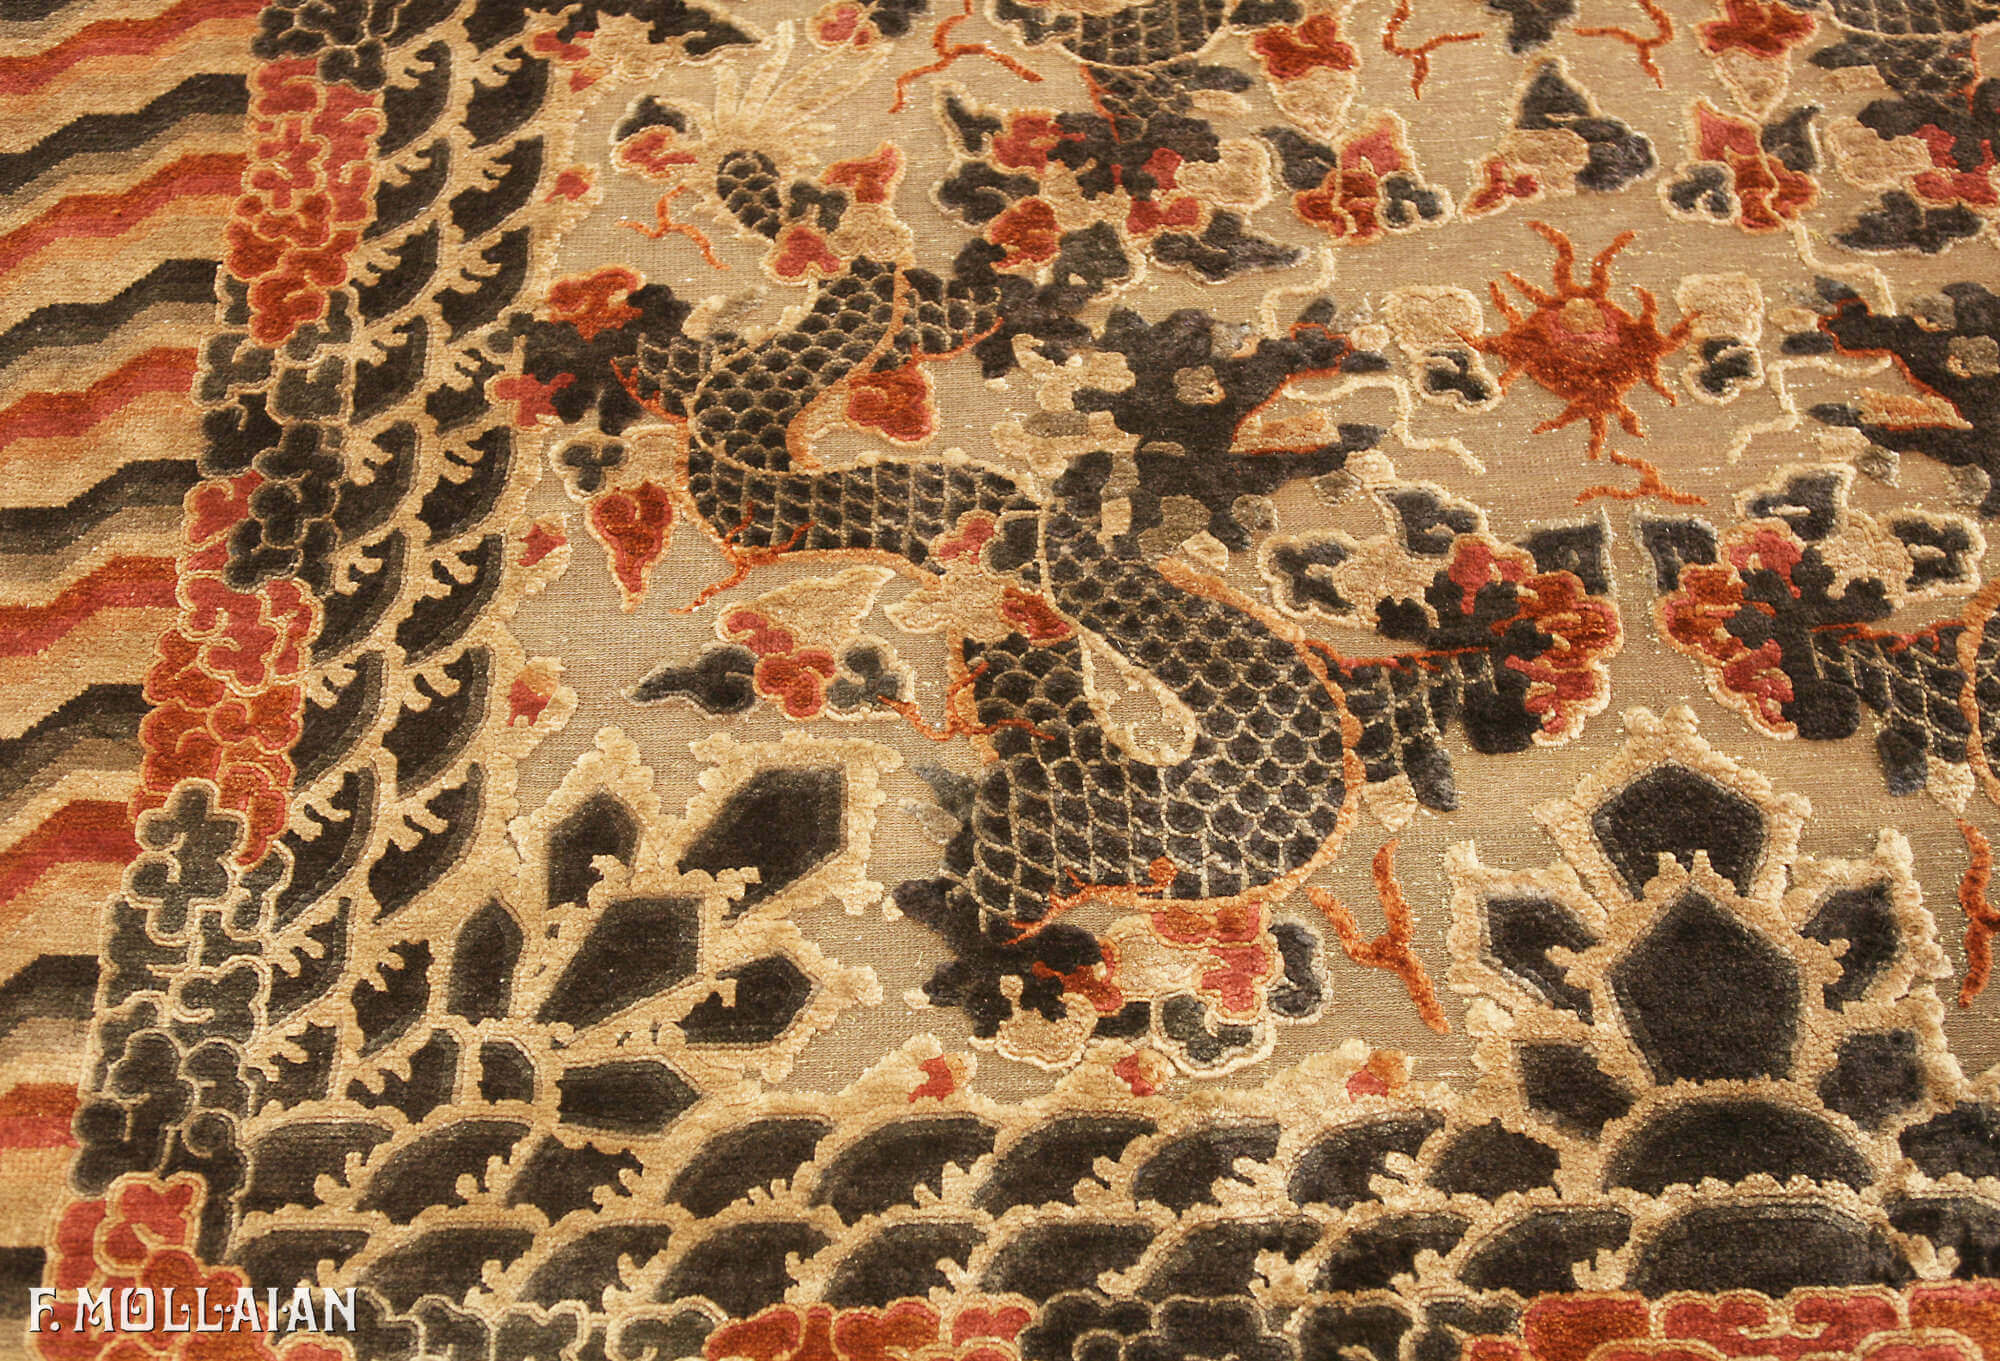 Tapis de Palais Impérial Chinois Antique en Soie et Métal n°:71420945